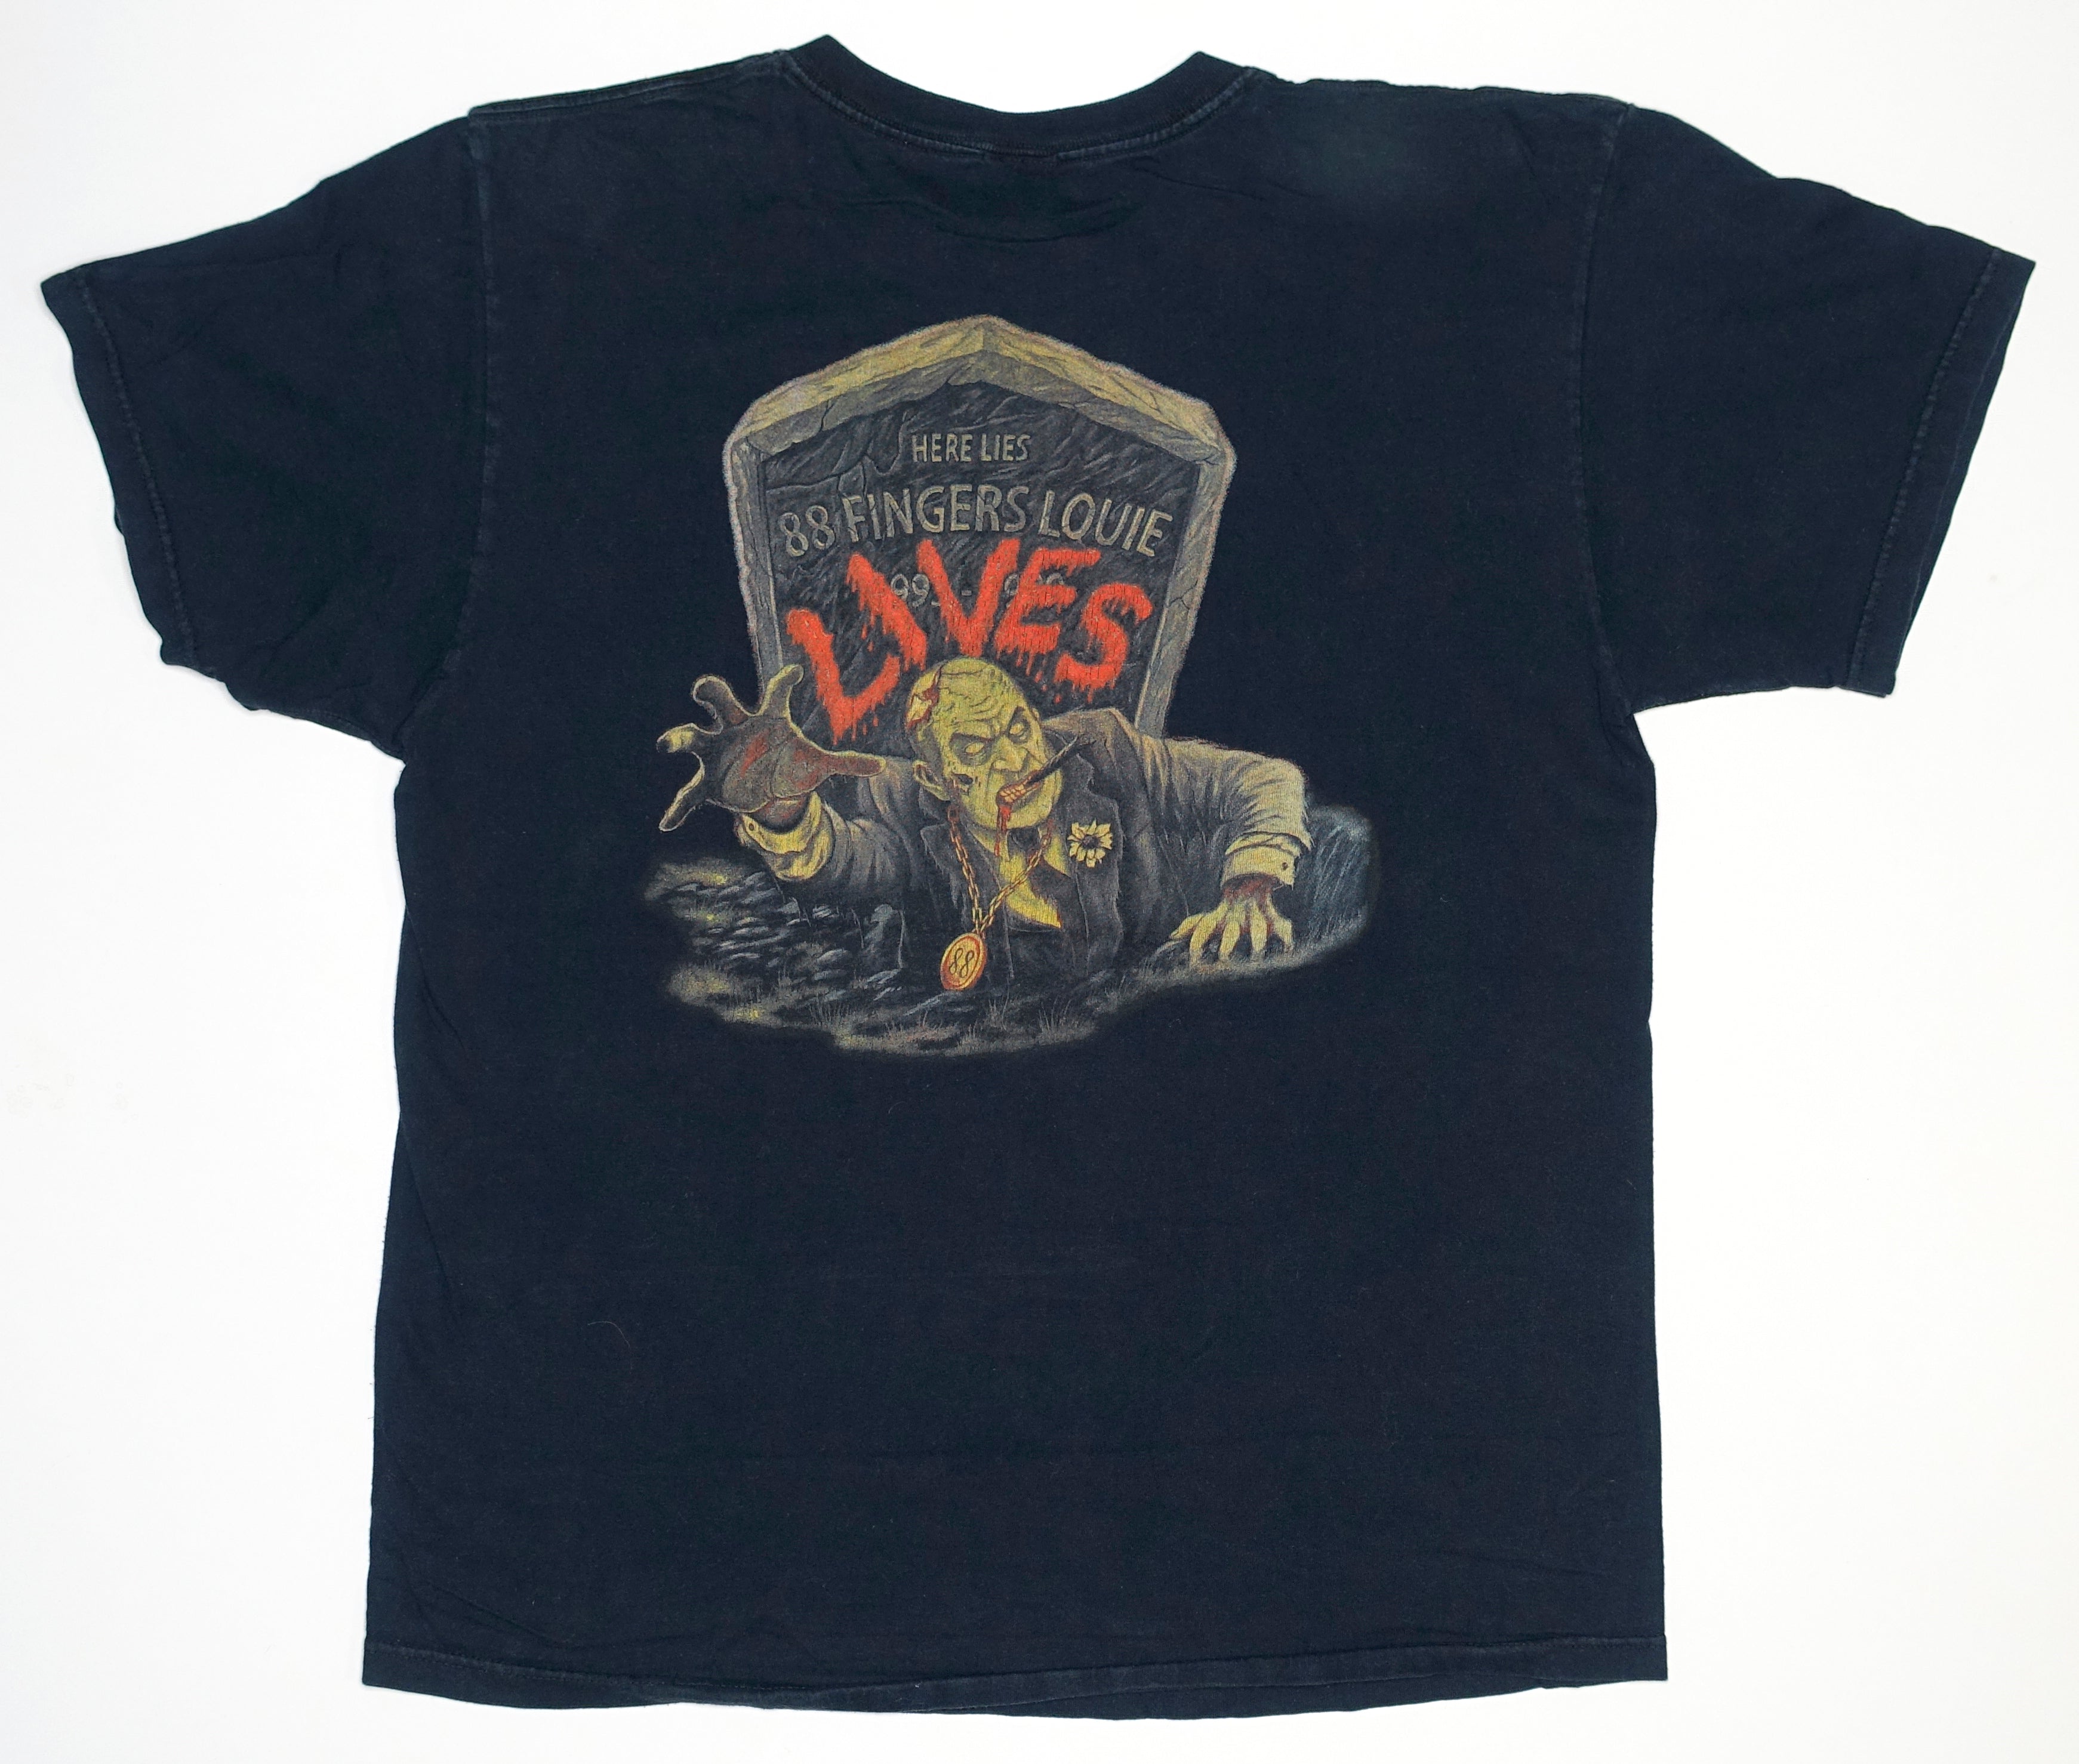 88 Fingers Louie – Lives 2009 Tour Shirt Size Large